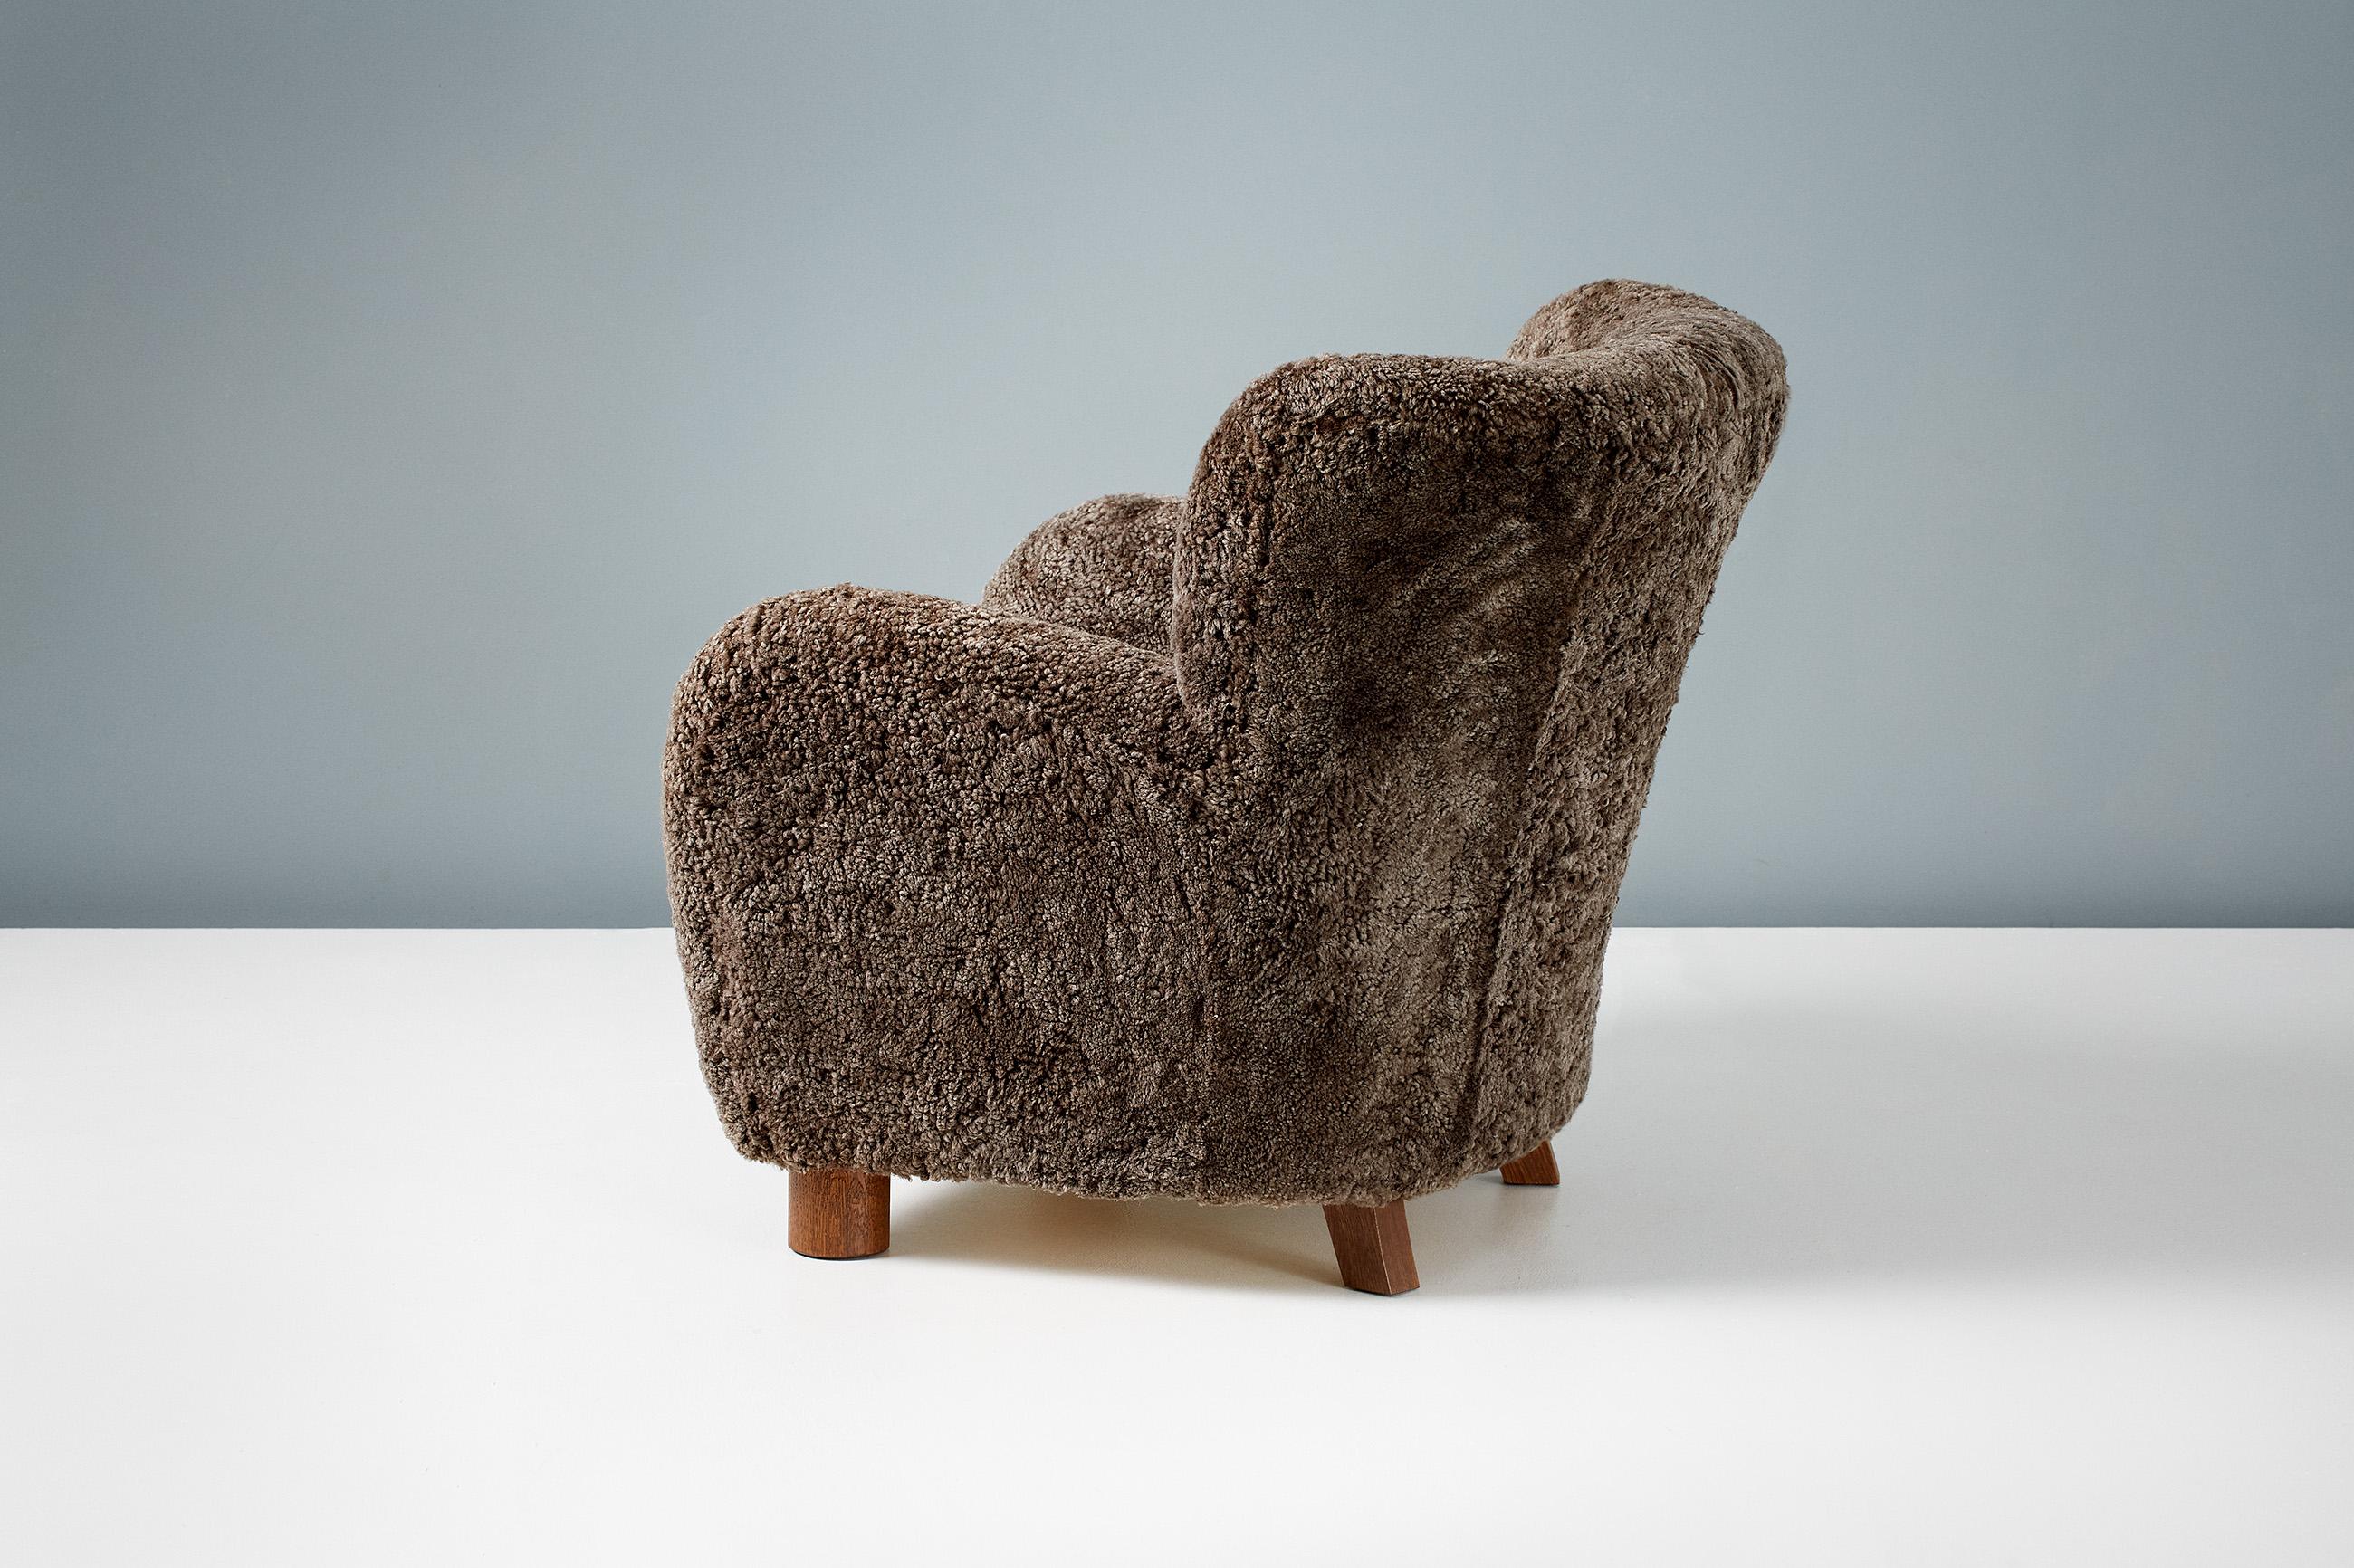 Une chaise longue sur mesure, développée et produite dans nos ateliers de Londres, avec des matériaux de la plus haute qualité. Cette chaise a été recouverte d'une luxueuse peau de mouton australien marron et a des pieds en chêne fumés.